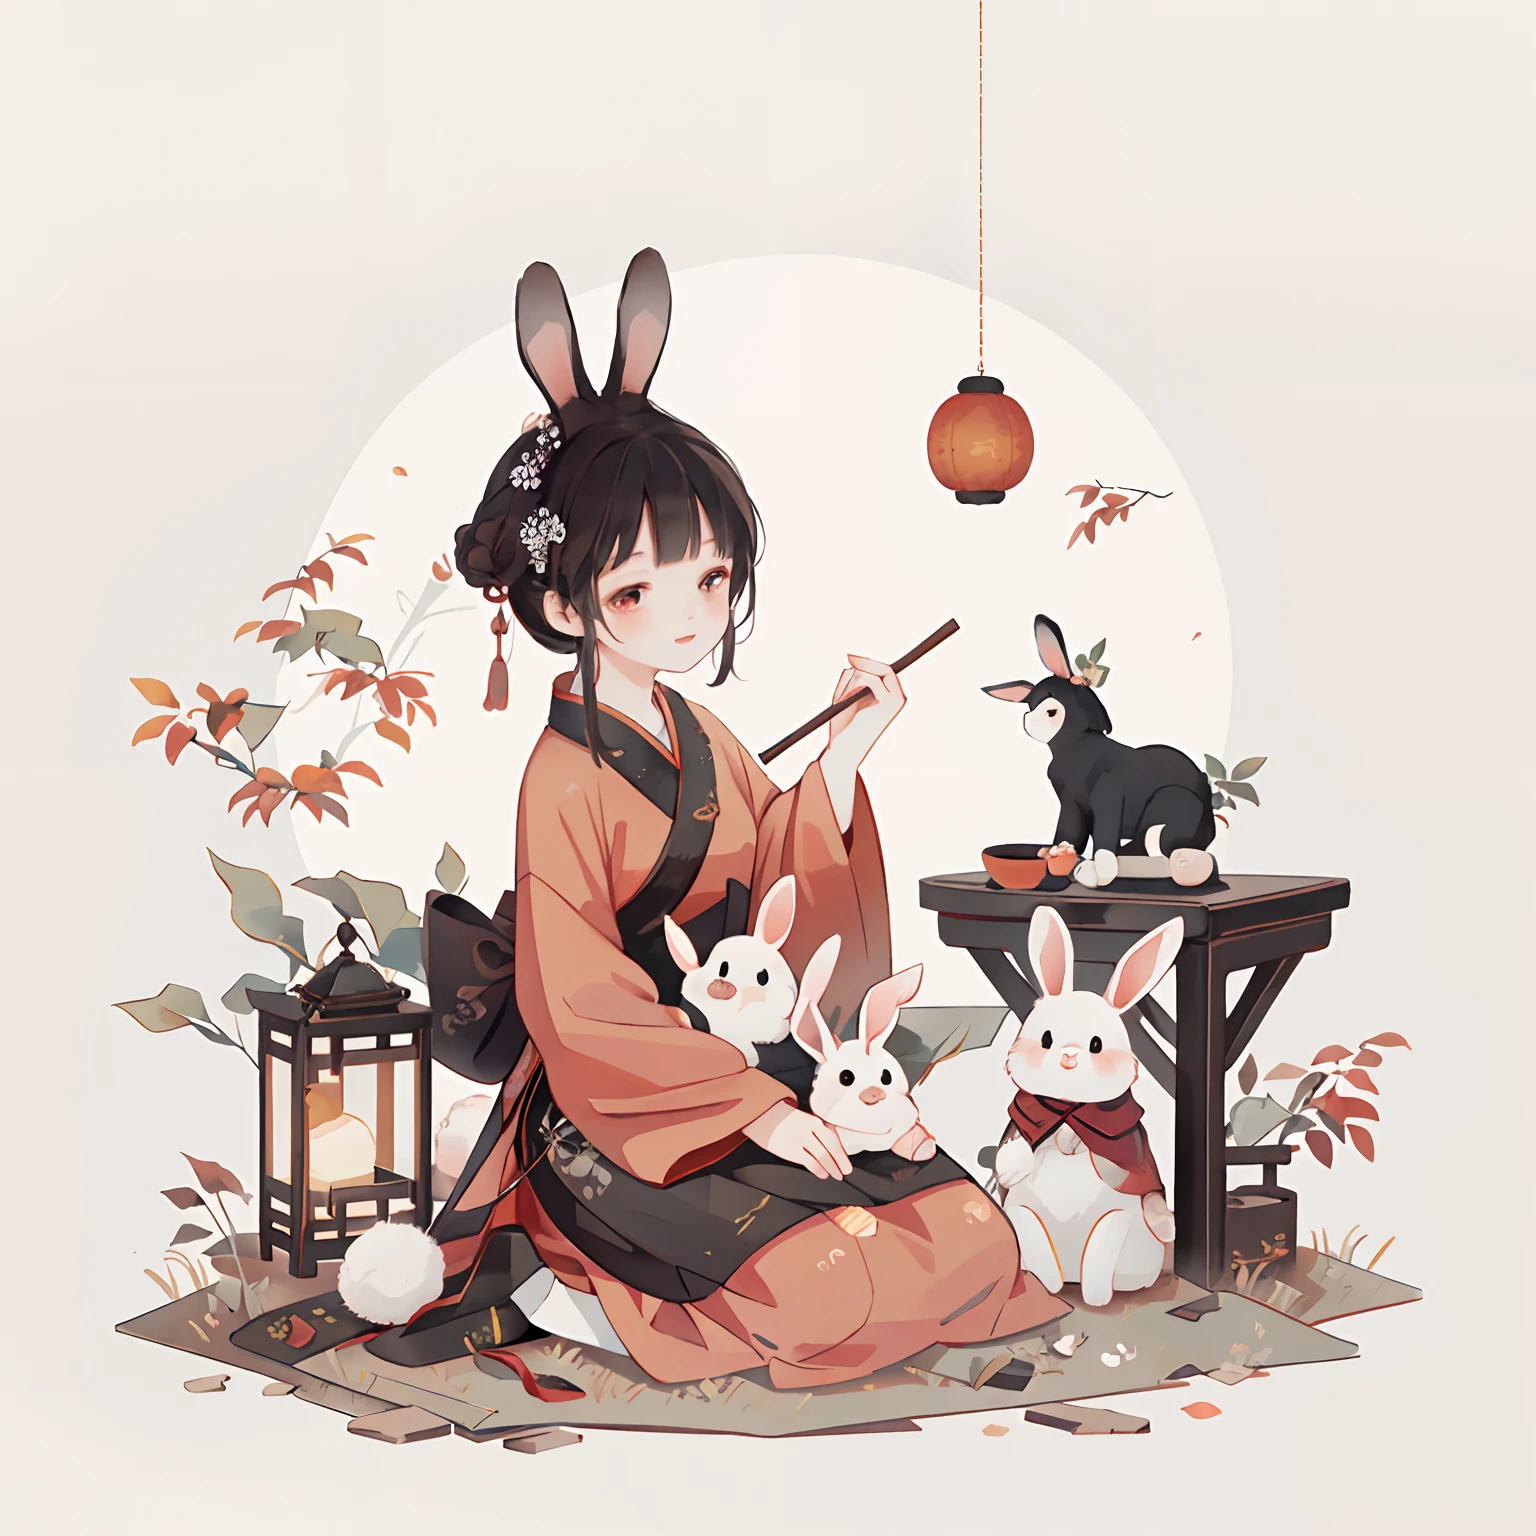 （一隻兔子：1.4）, 坐在地上, 抬頭看, 中秋節氣氛, 中國傳統插畫風格, 數位藝術, 簡單的背景, 白色背景上的傑作, 最好的品質, 超詳細, 高品質, 4k